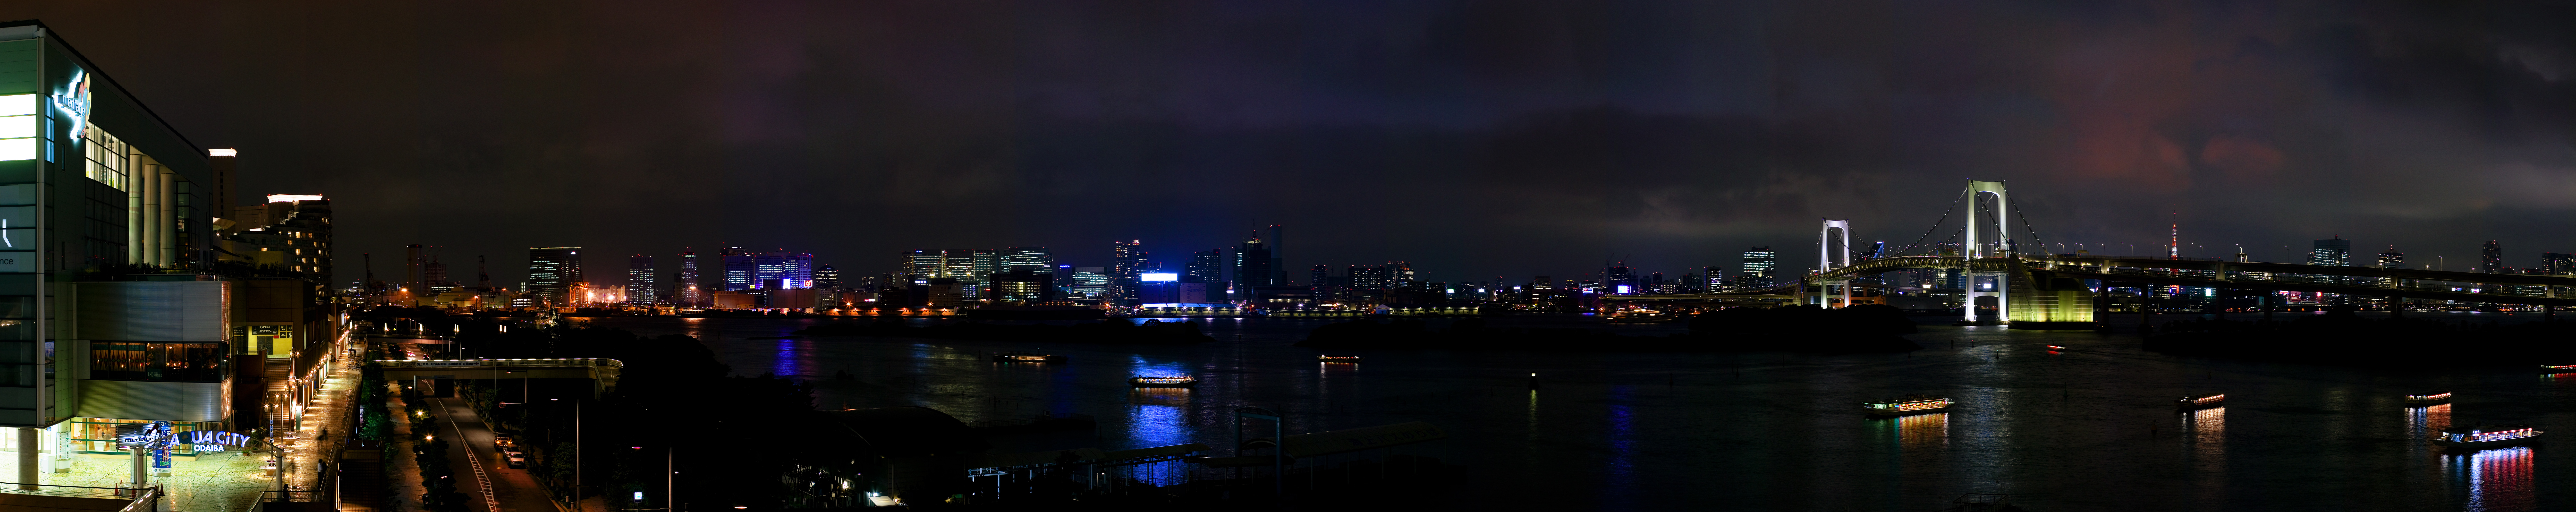 fotografia, materiale, libero il panorama, dipinga, fotografia di scorta,Tokio vista serale da Odaiba, Ponte di arcobaleno, Baia di Tokio, barca di piacere, La spiaggia